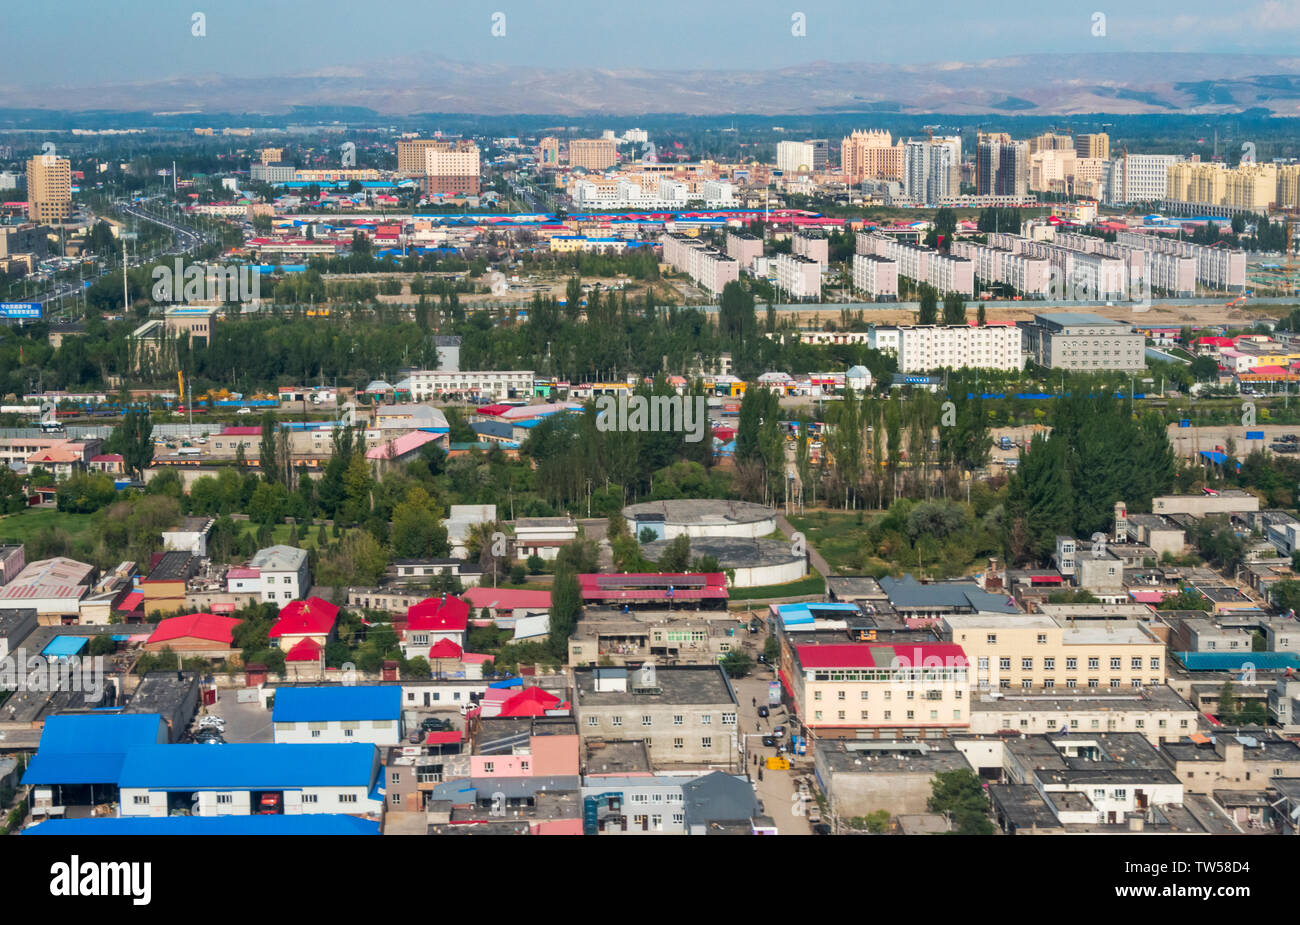 Aerial view of Yining, Xinjiang Province, China Stock Photo